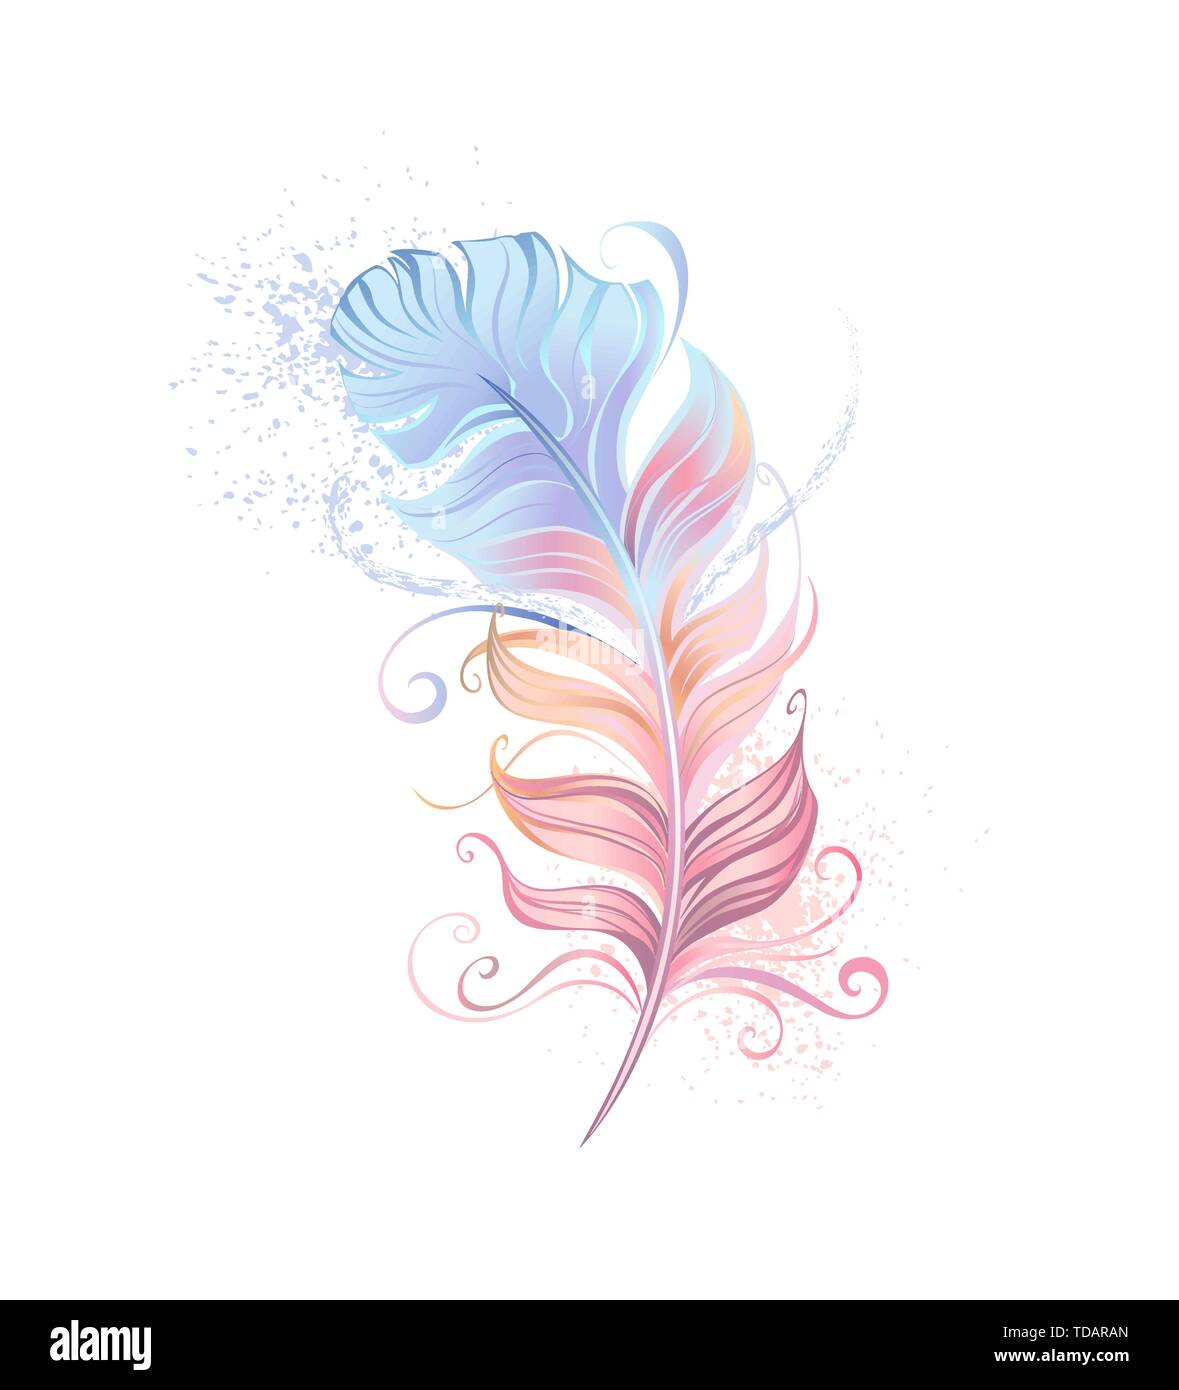 Bella feather dipinta in rosa e blu pastello su sfondo bianco. Illustrazione Vettoriale